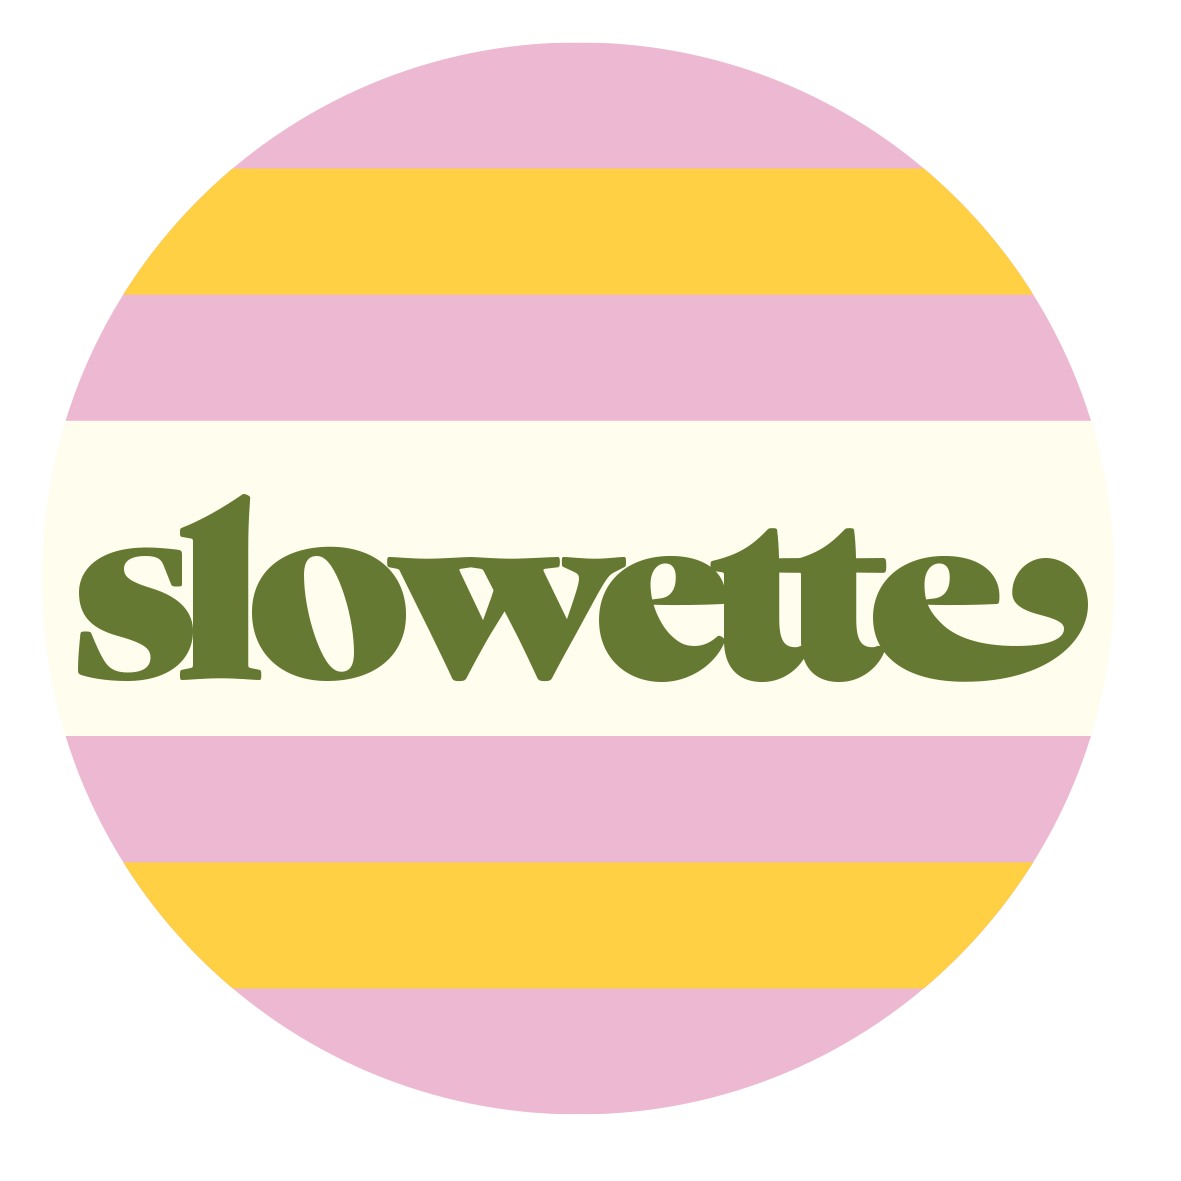 Slowette